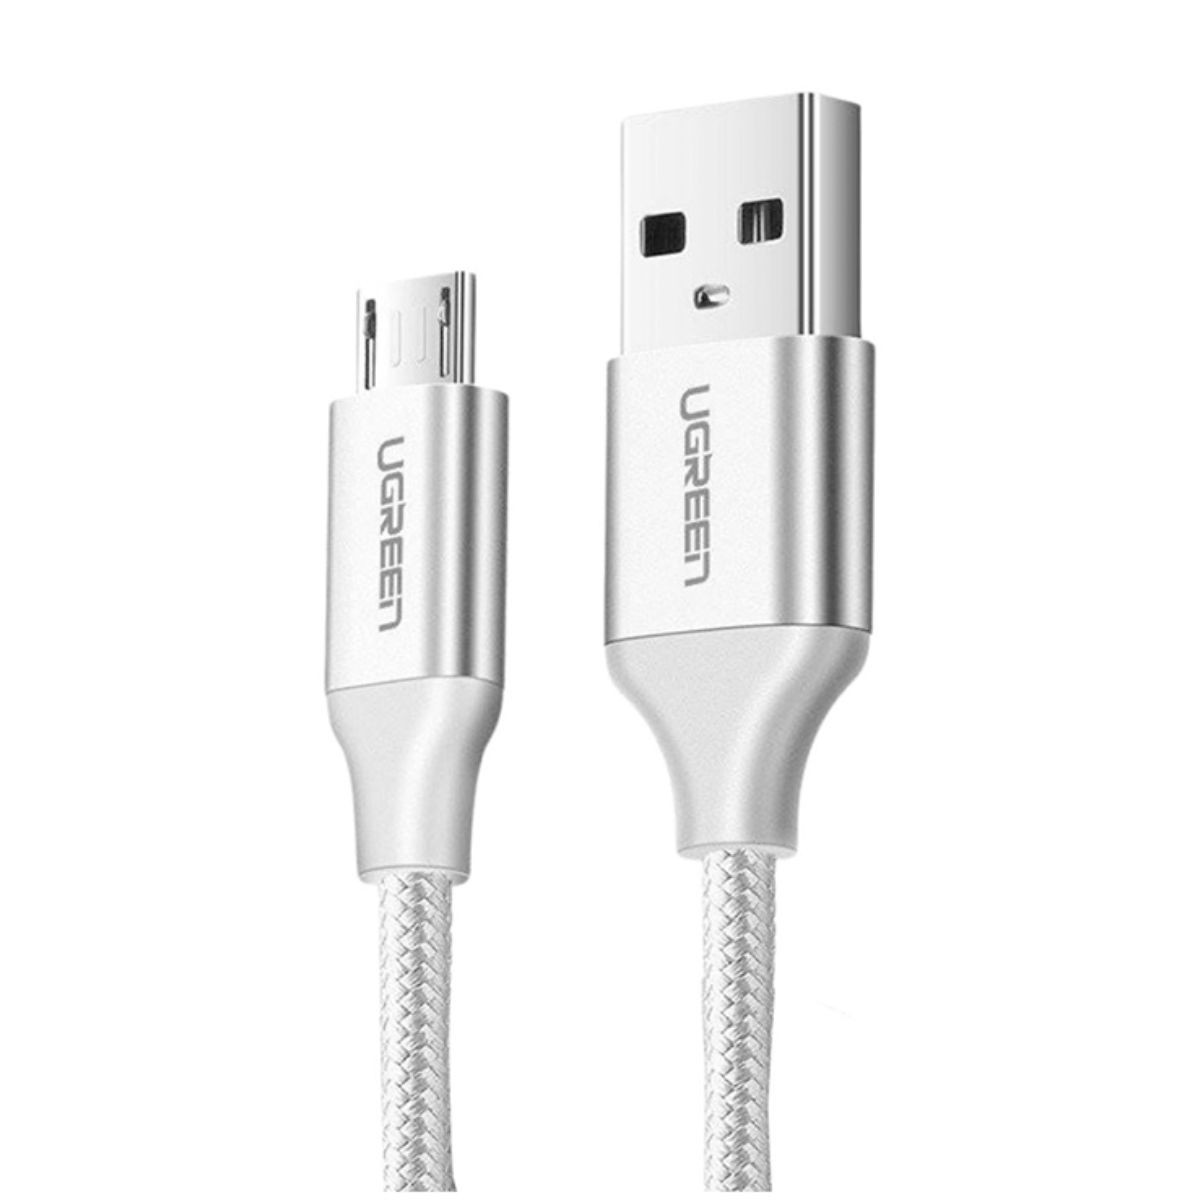 Cáp sạc nhanh Micro USB Ugreen 60152 US290 dài 1.5m, màu trắng, mạ niken bện nhôm